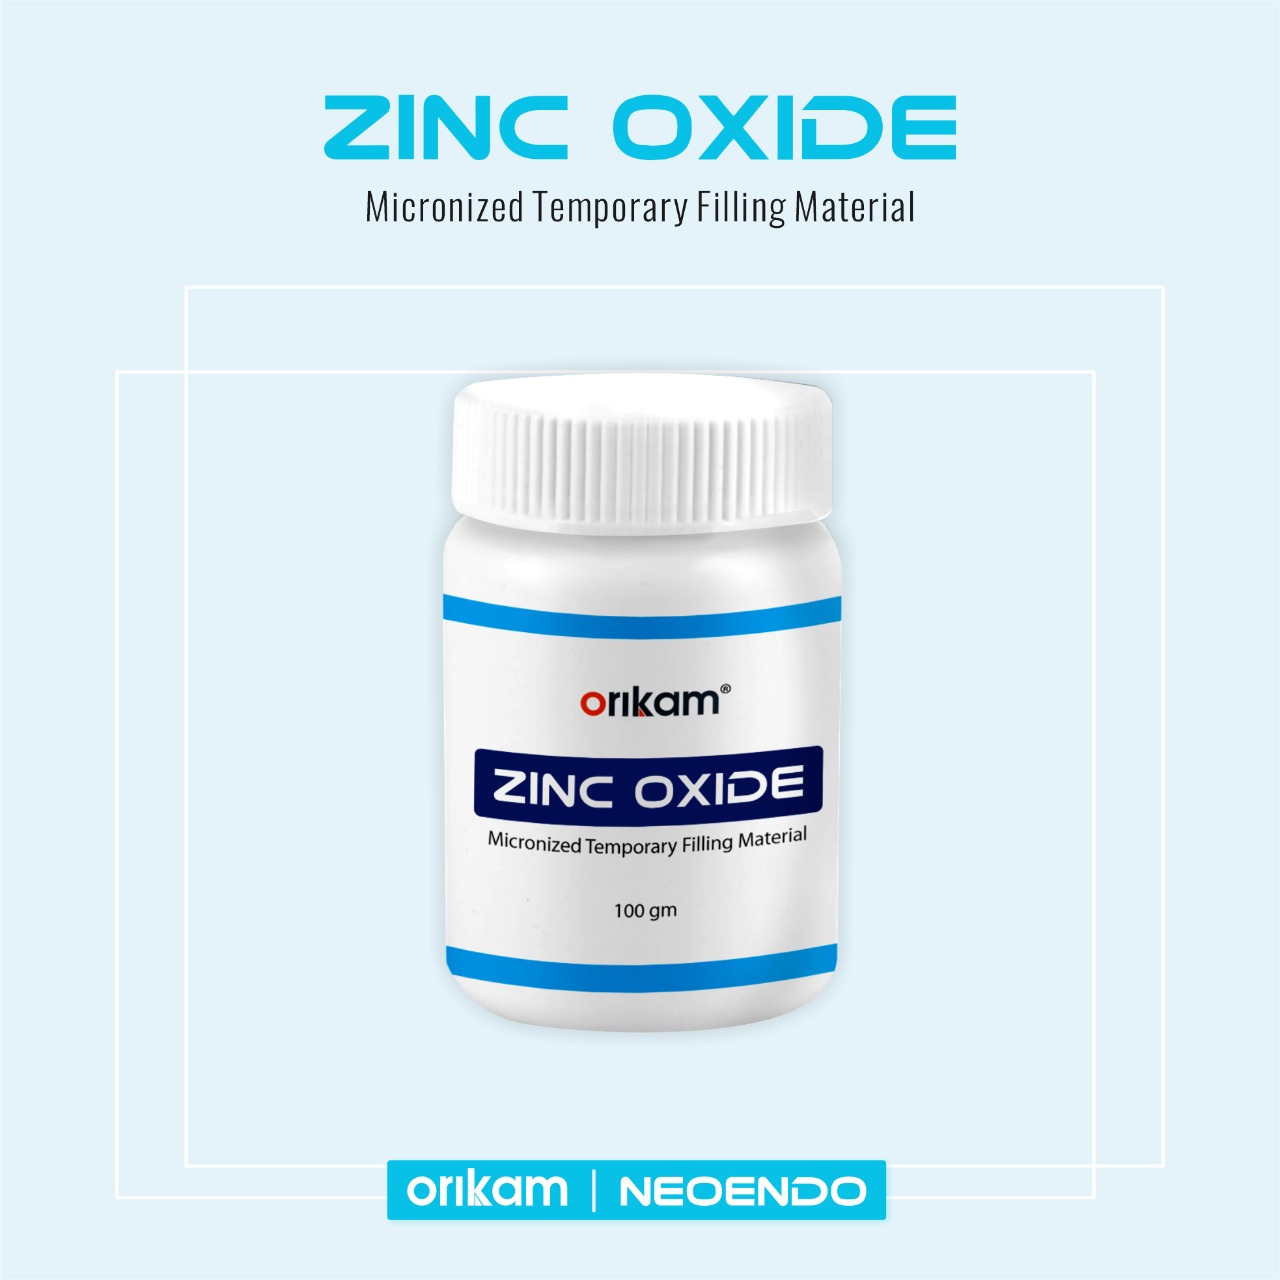 Orikam Neoendo Zinc oxide powder